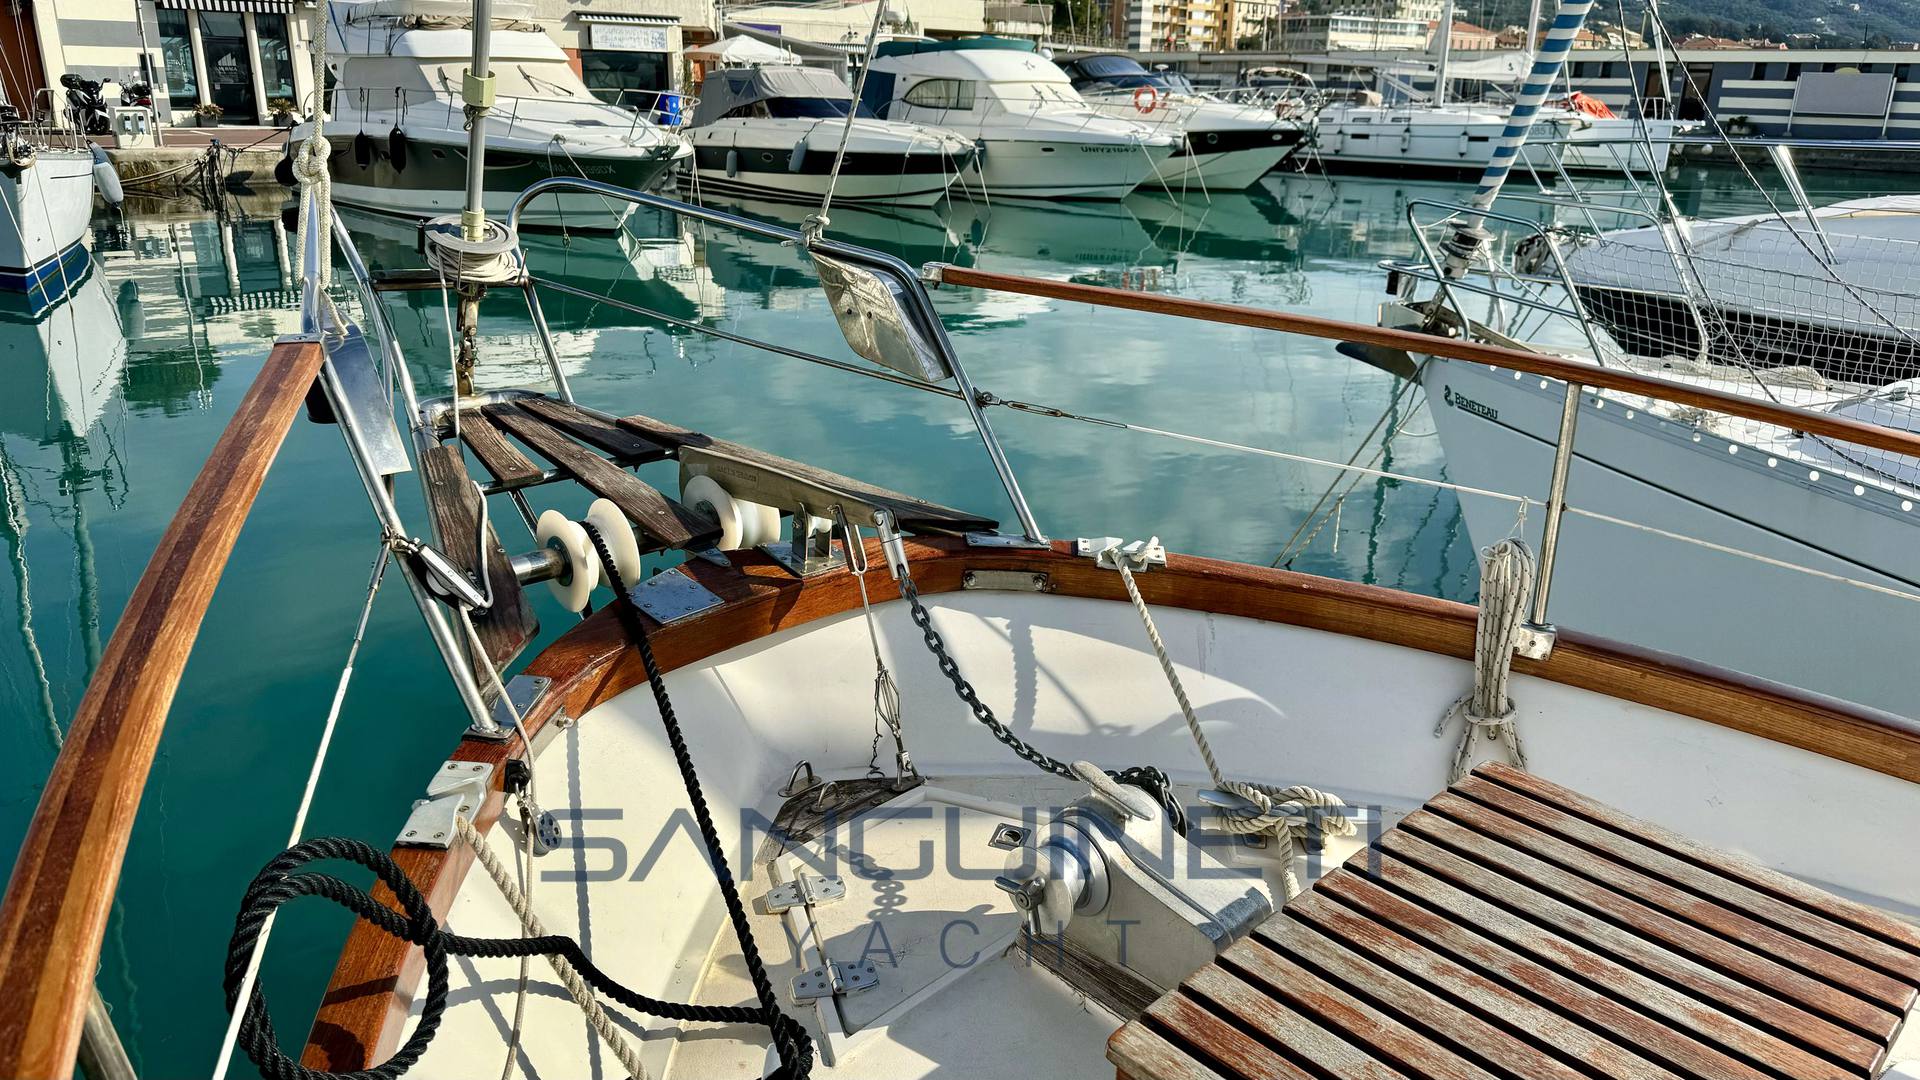 Syltala Nauticat 33 Barco a motor usado para venda